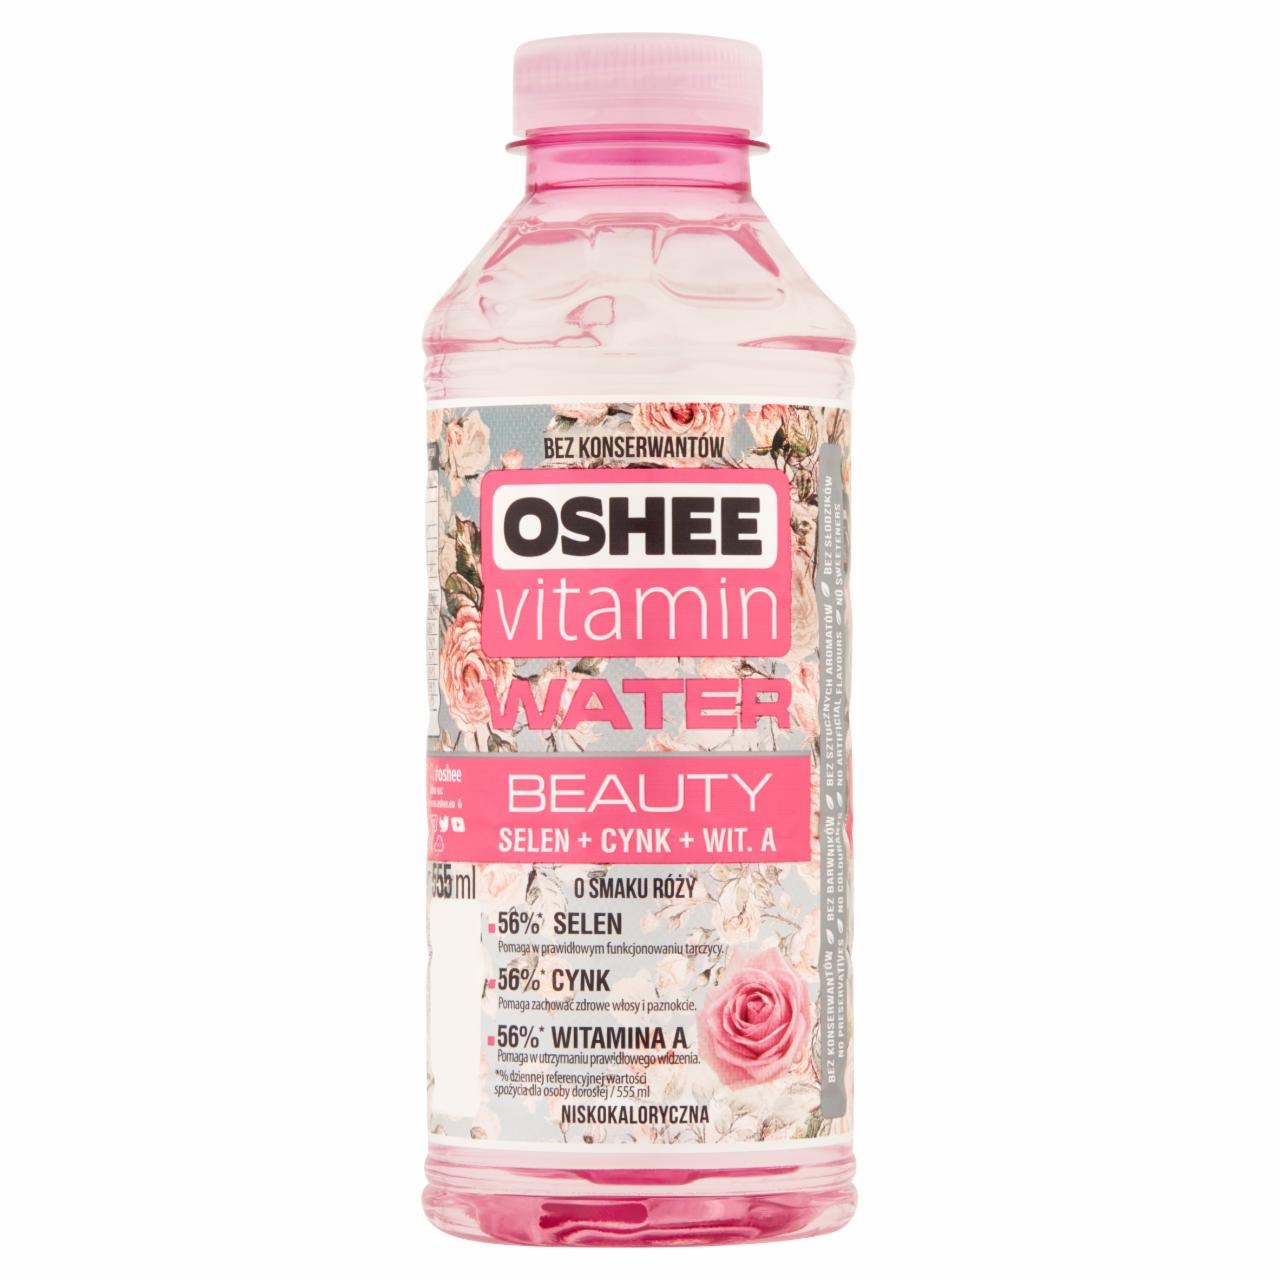 Zdjęcia - Oshee Vitamin Water Beauty Napój niegazowany o smaku róży 555 ml